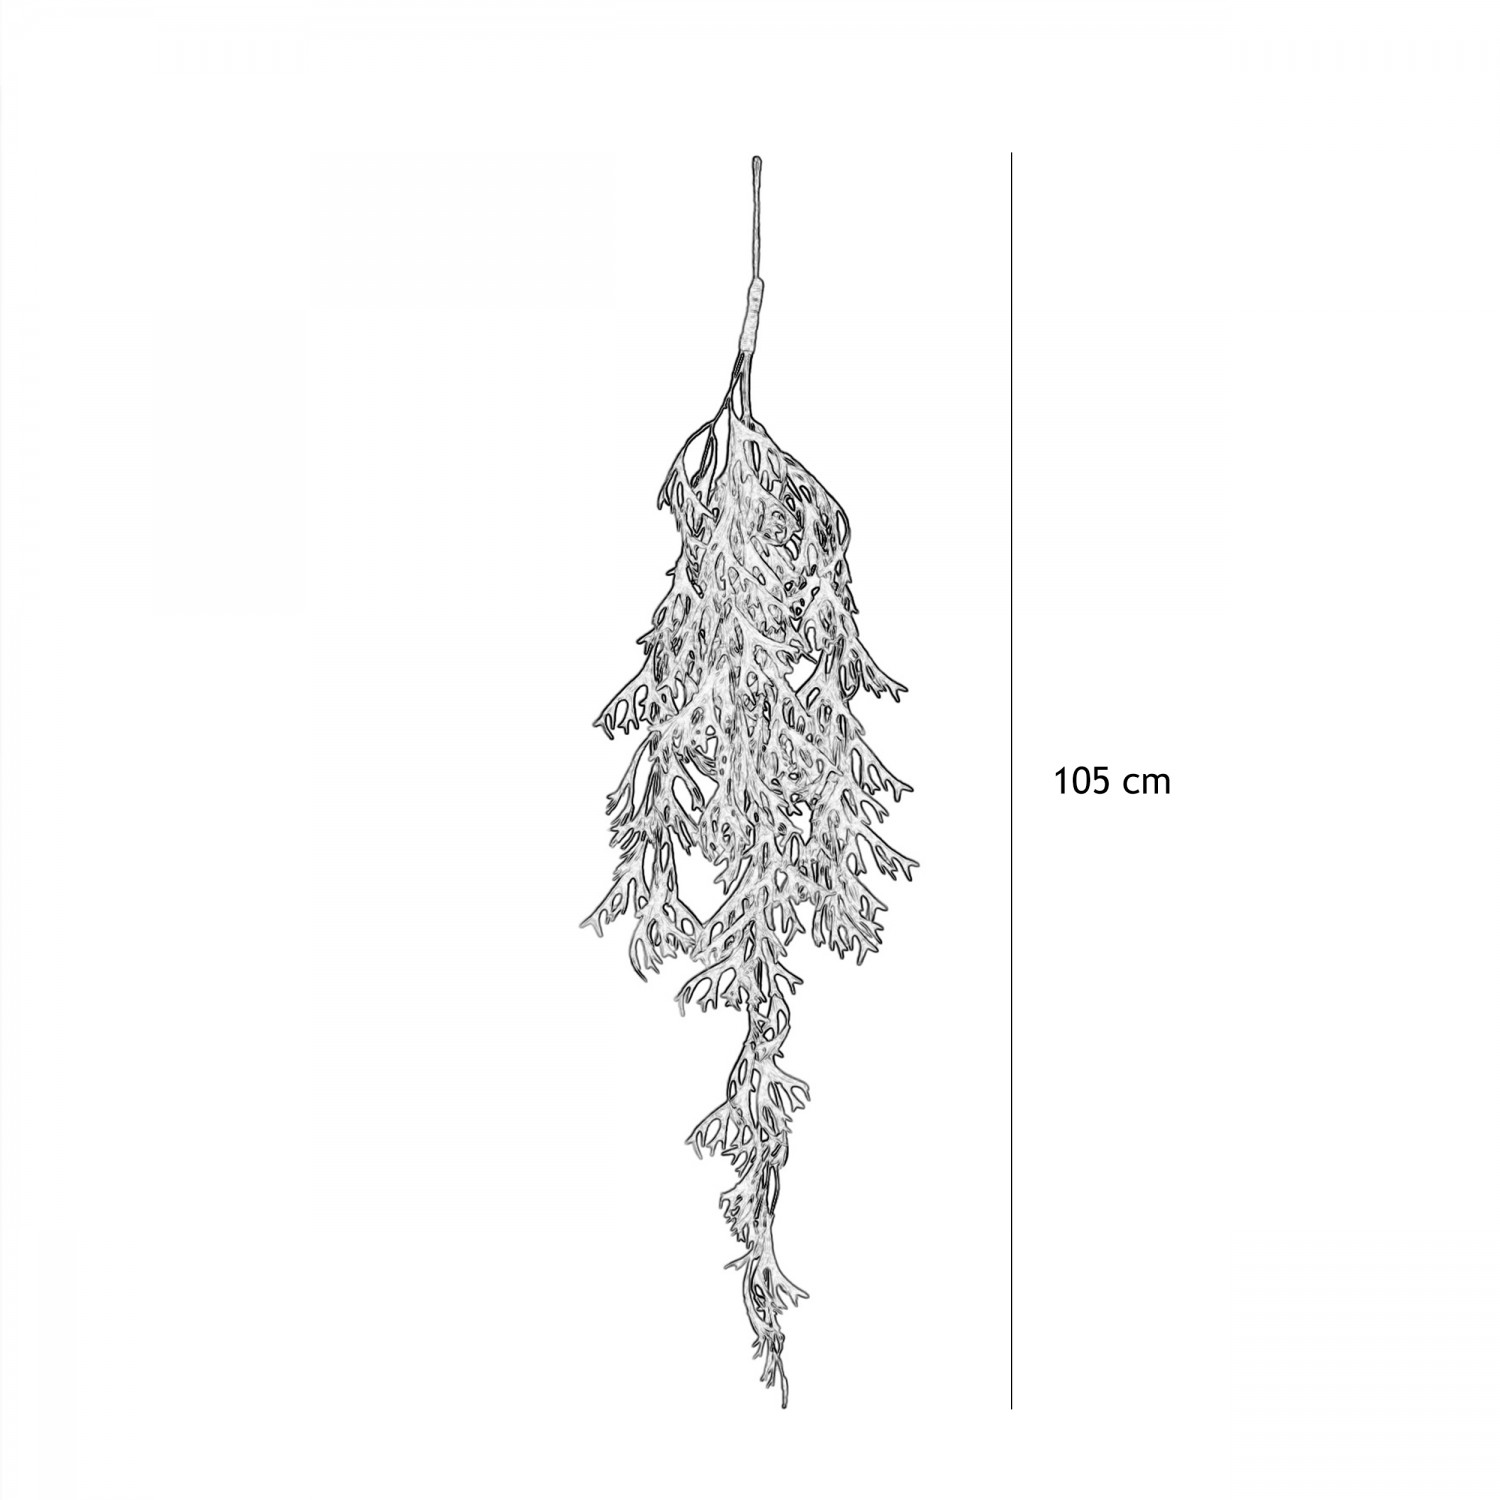 Chute plante artificielle de feuillage 105cm graphique avec les dimensions